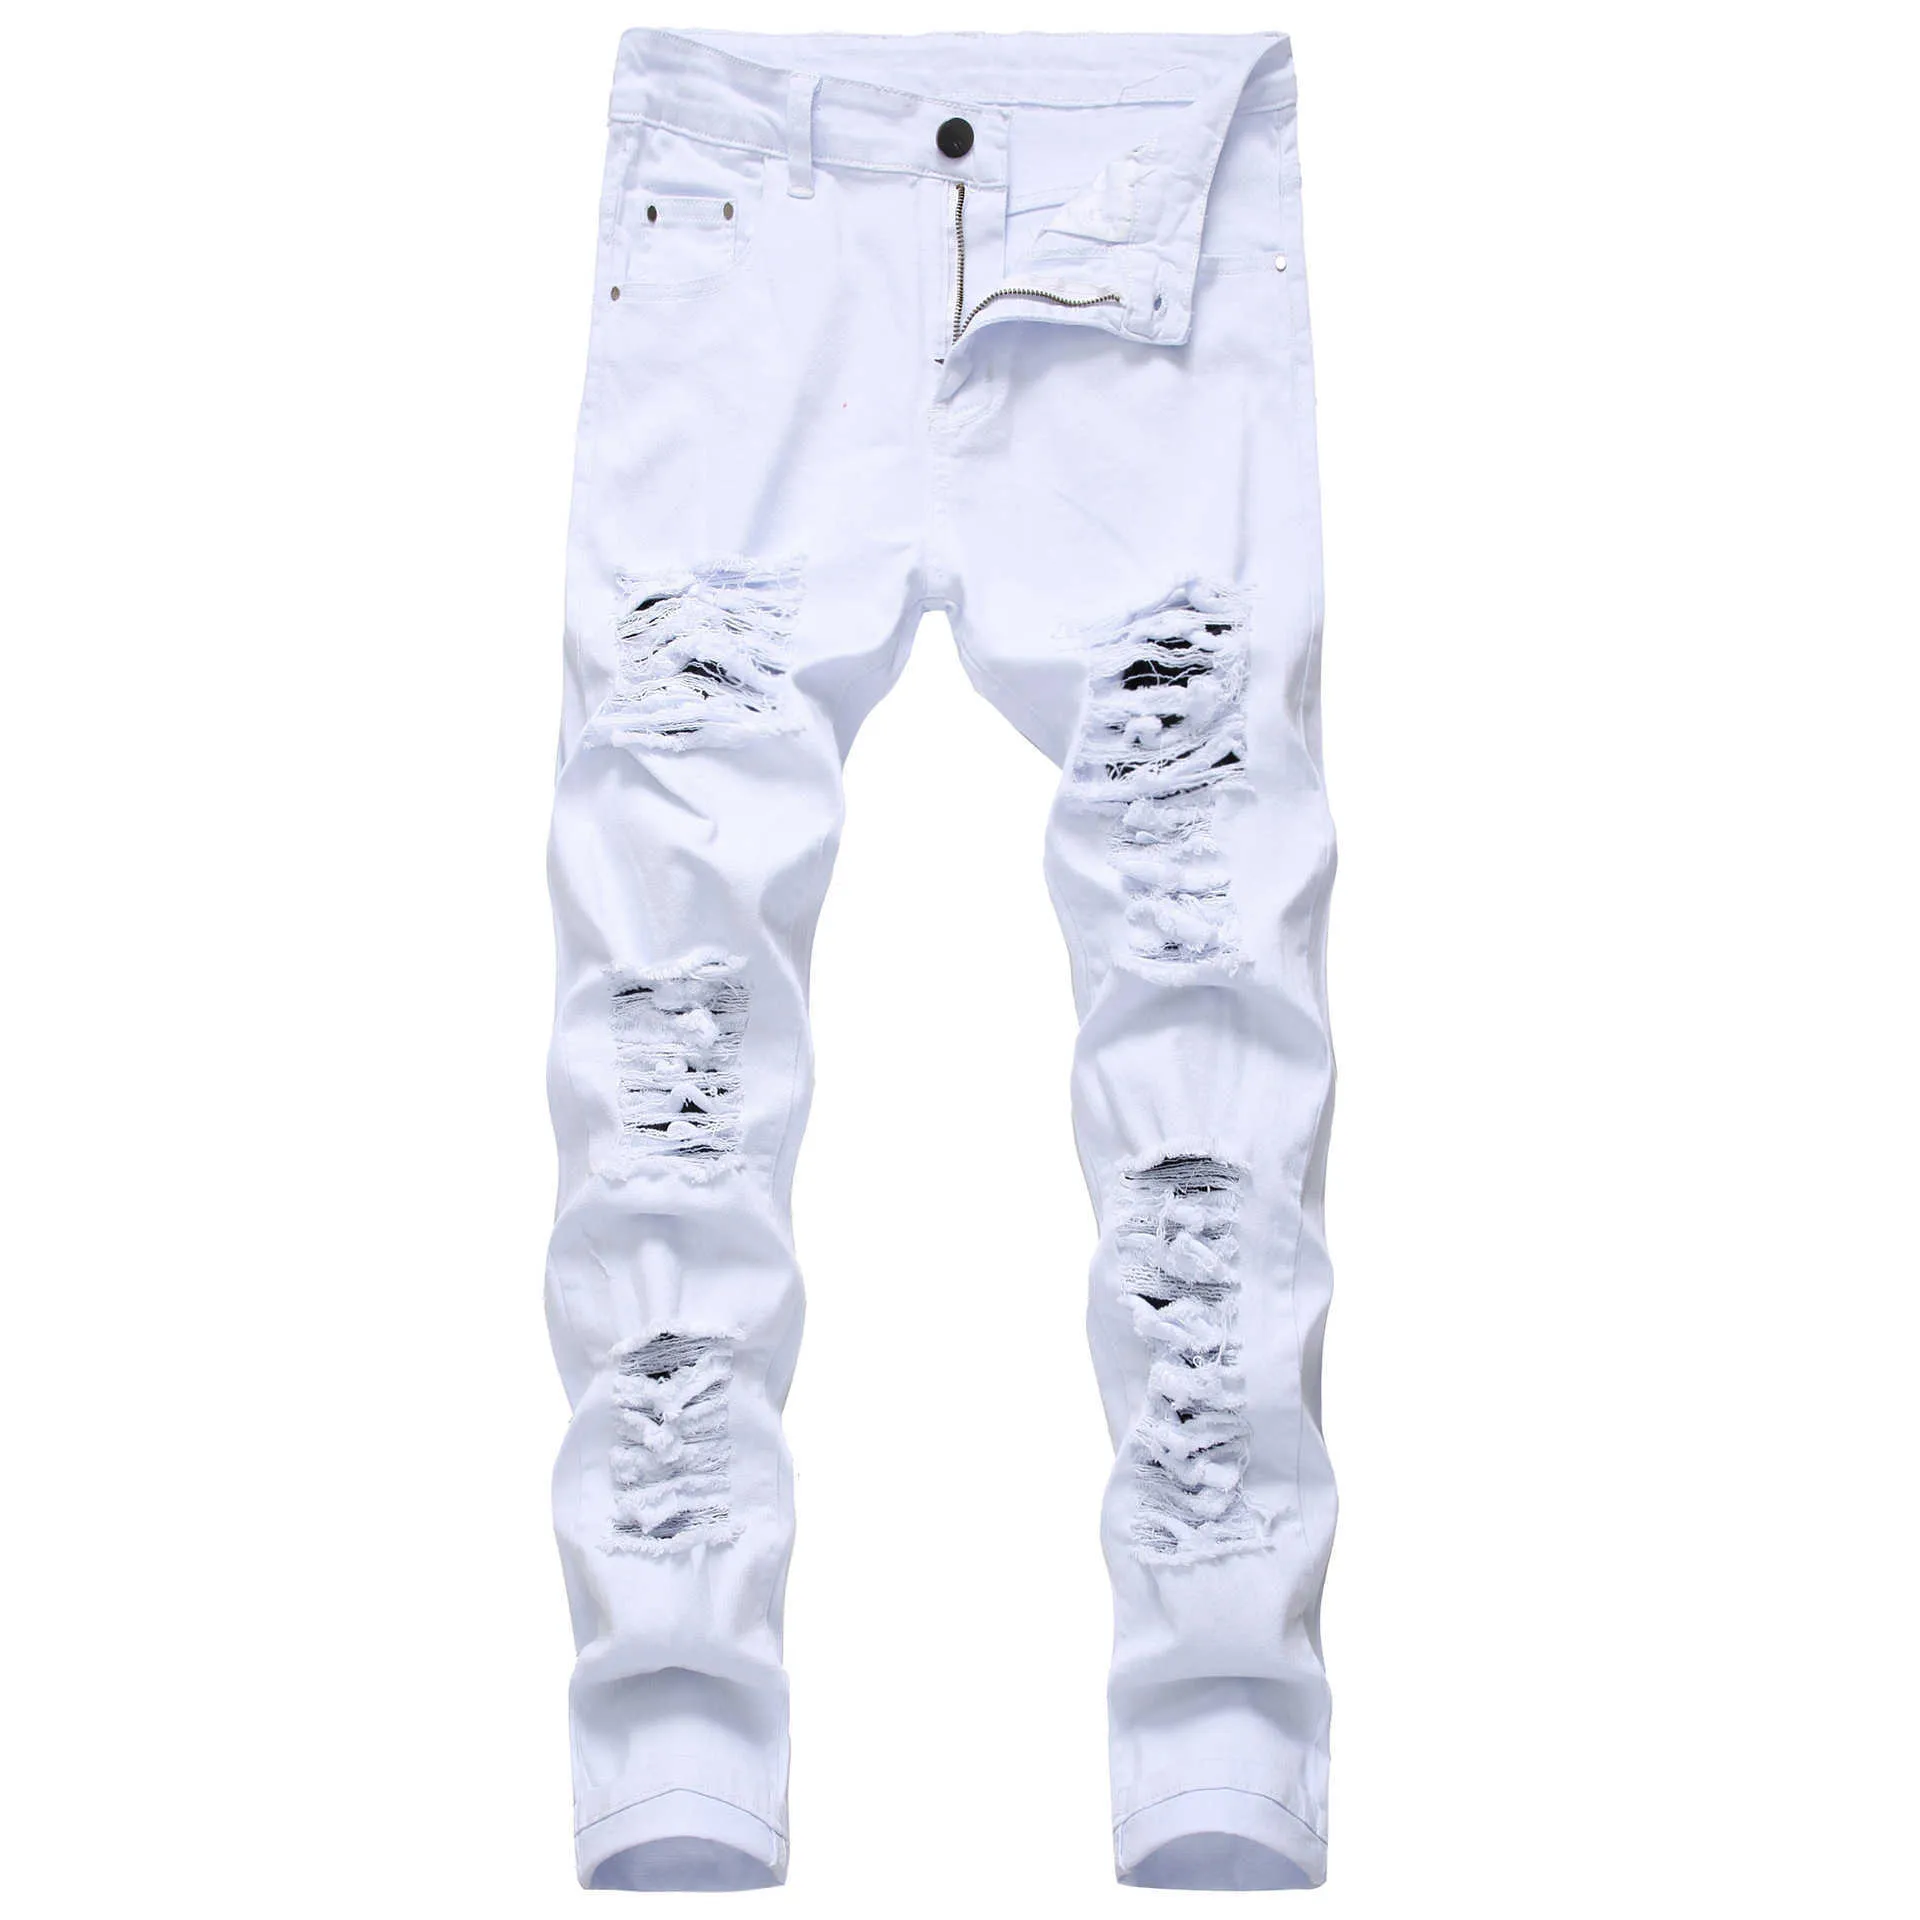 Прибытие мужское хлопок разорванные джинсы повседневные тонкие тощие белые джинсы мужские брюки мода стрейч хип-хоп джинсовые штаны мужчина 210622